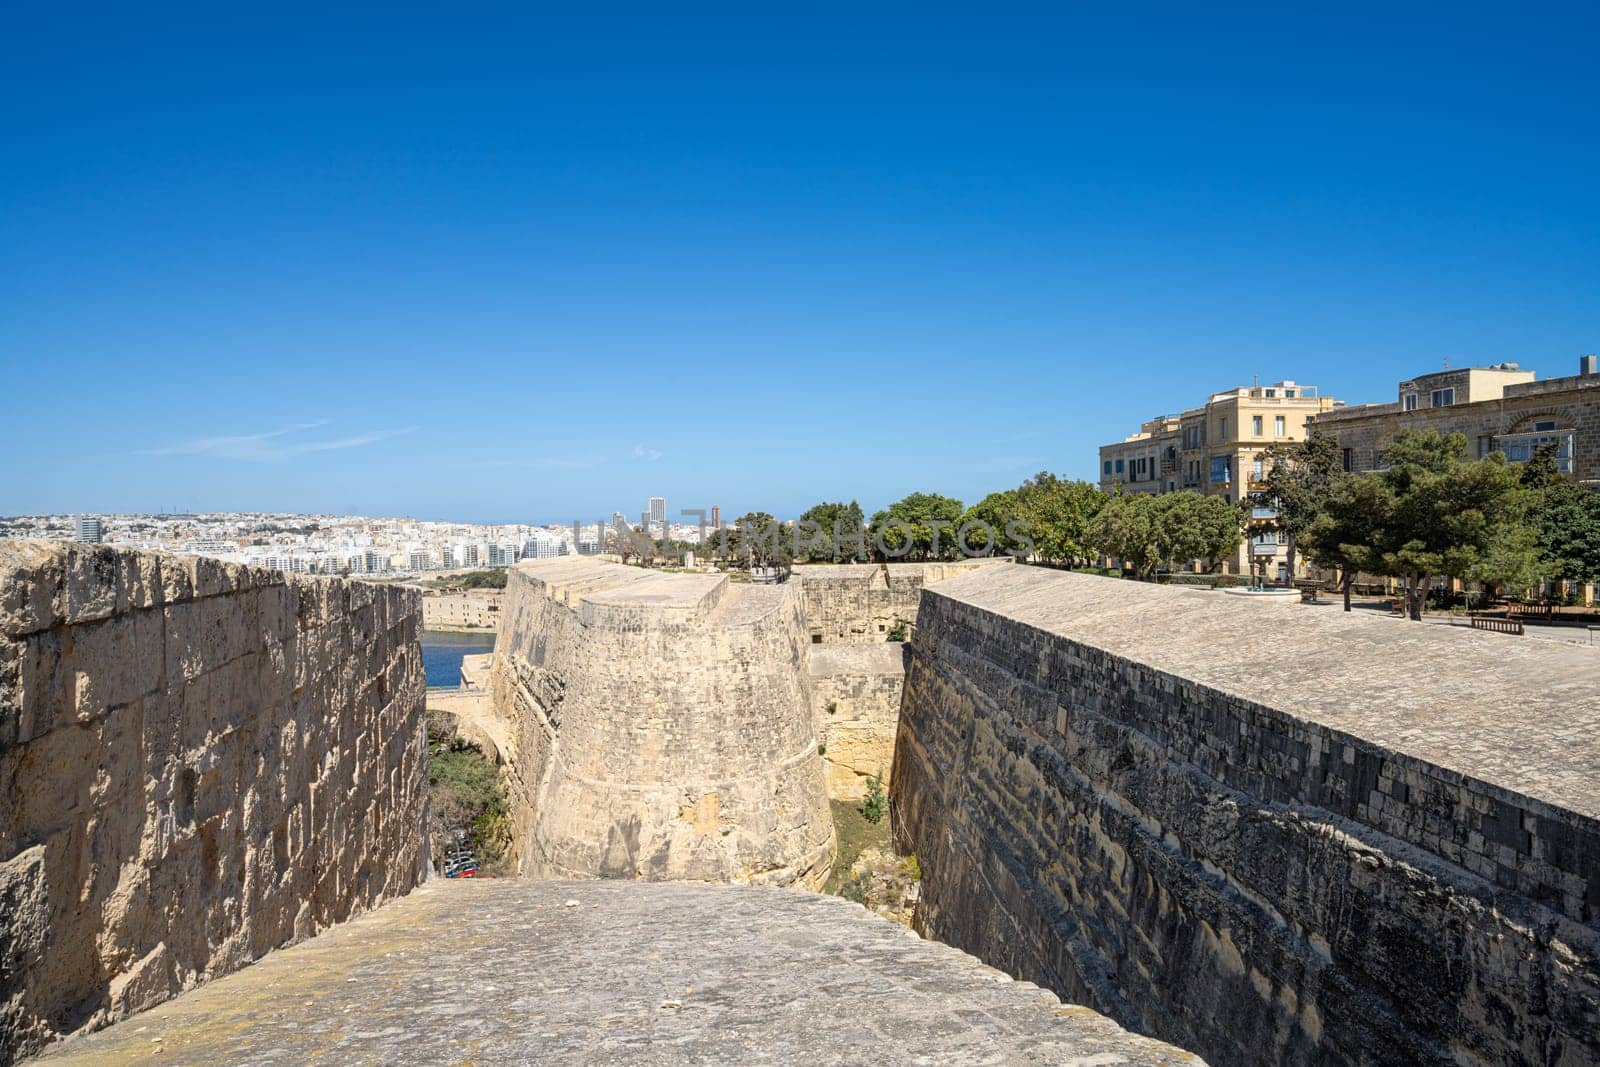  St. John bastion in Valletta, Malta by sergiodv